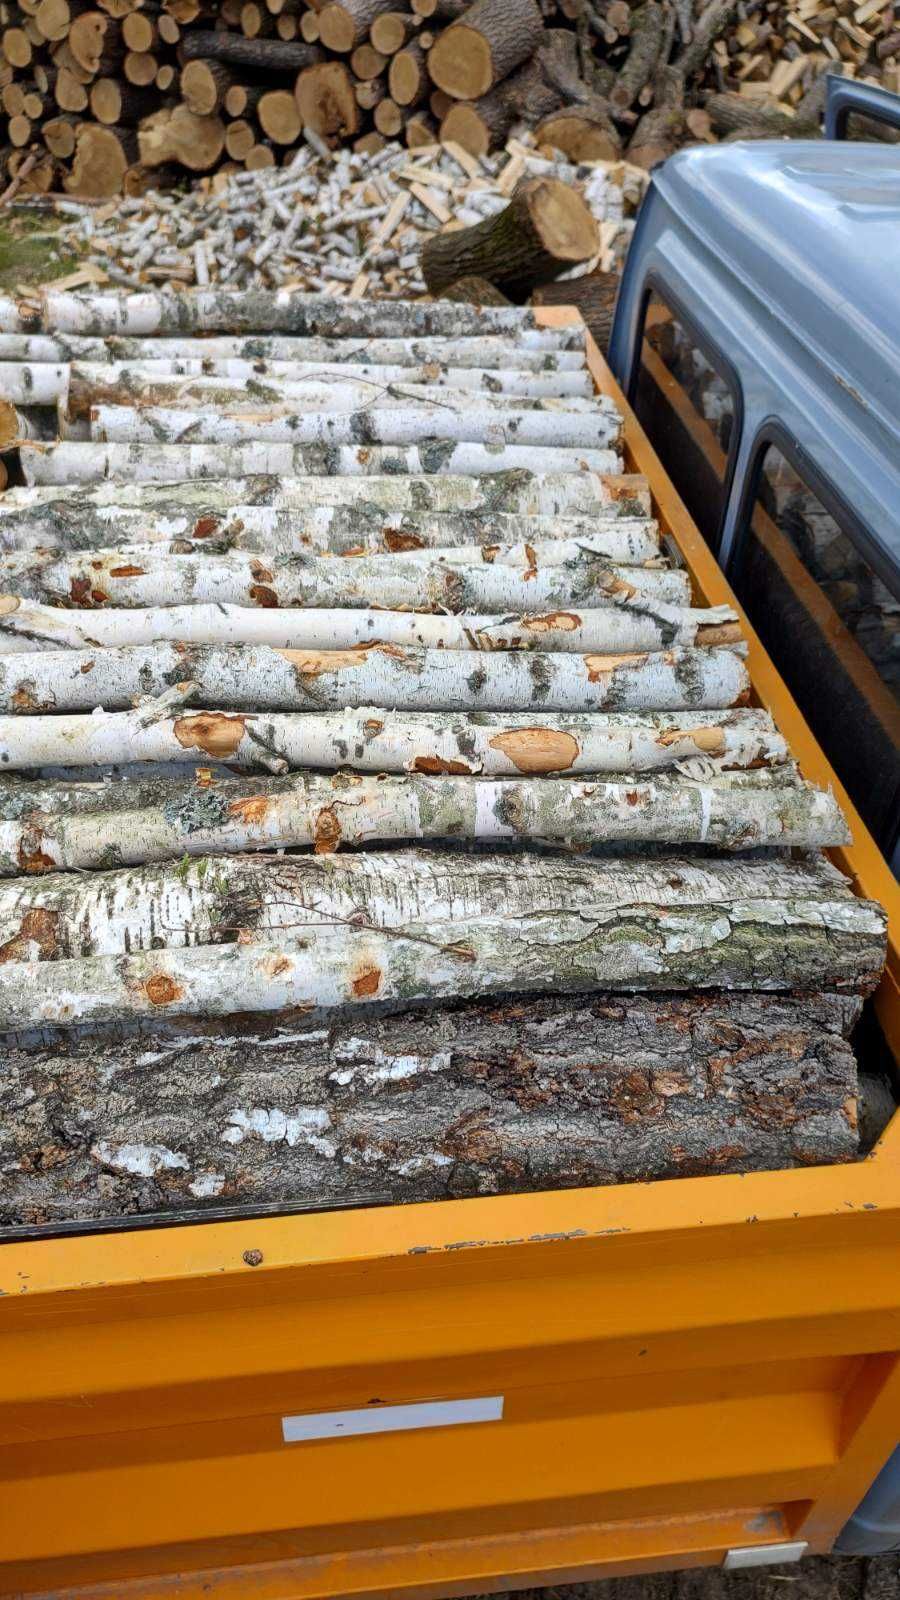 Березовые дрова - надежный и экологически чистый источник тепла!